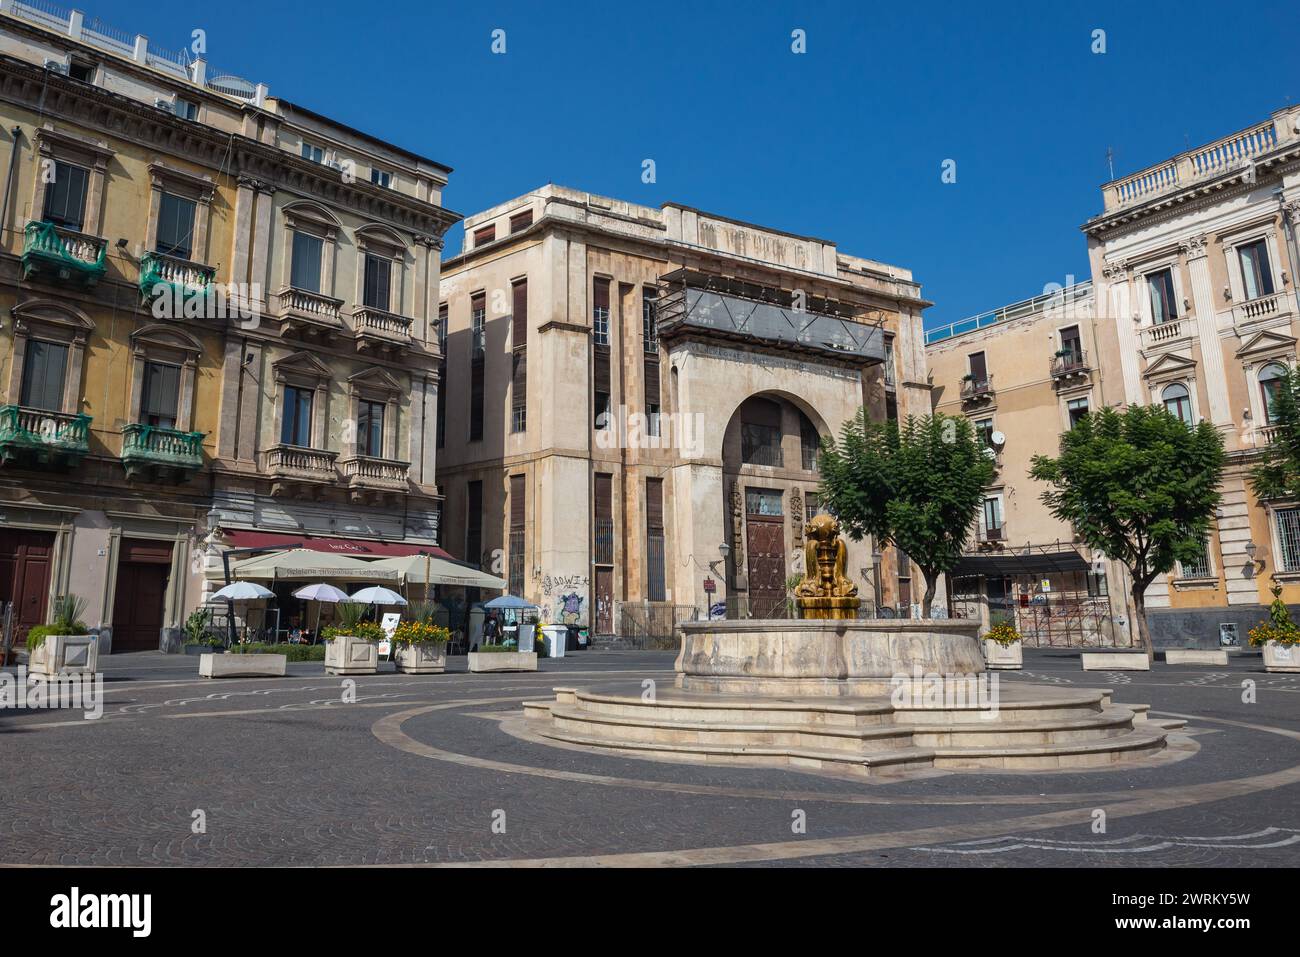 Casa Del Mutilato and fountain on Vincenzo Bellini Square in historic part of Catania city on the island of Sicily, Italy Stock Photo